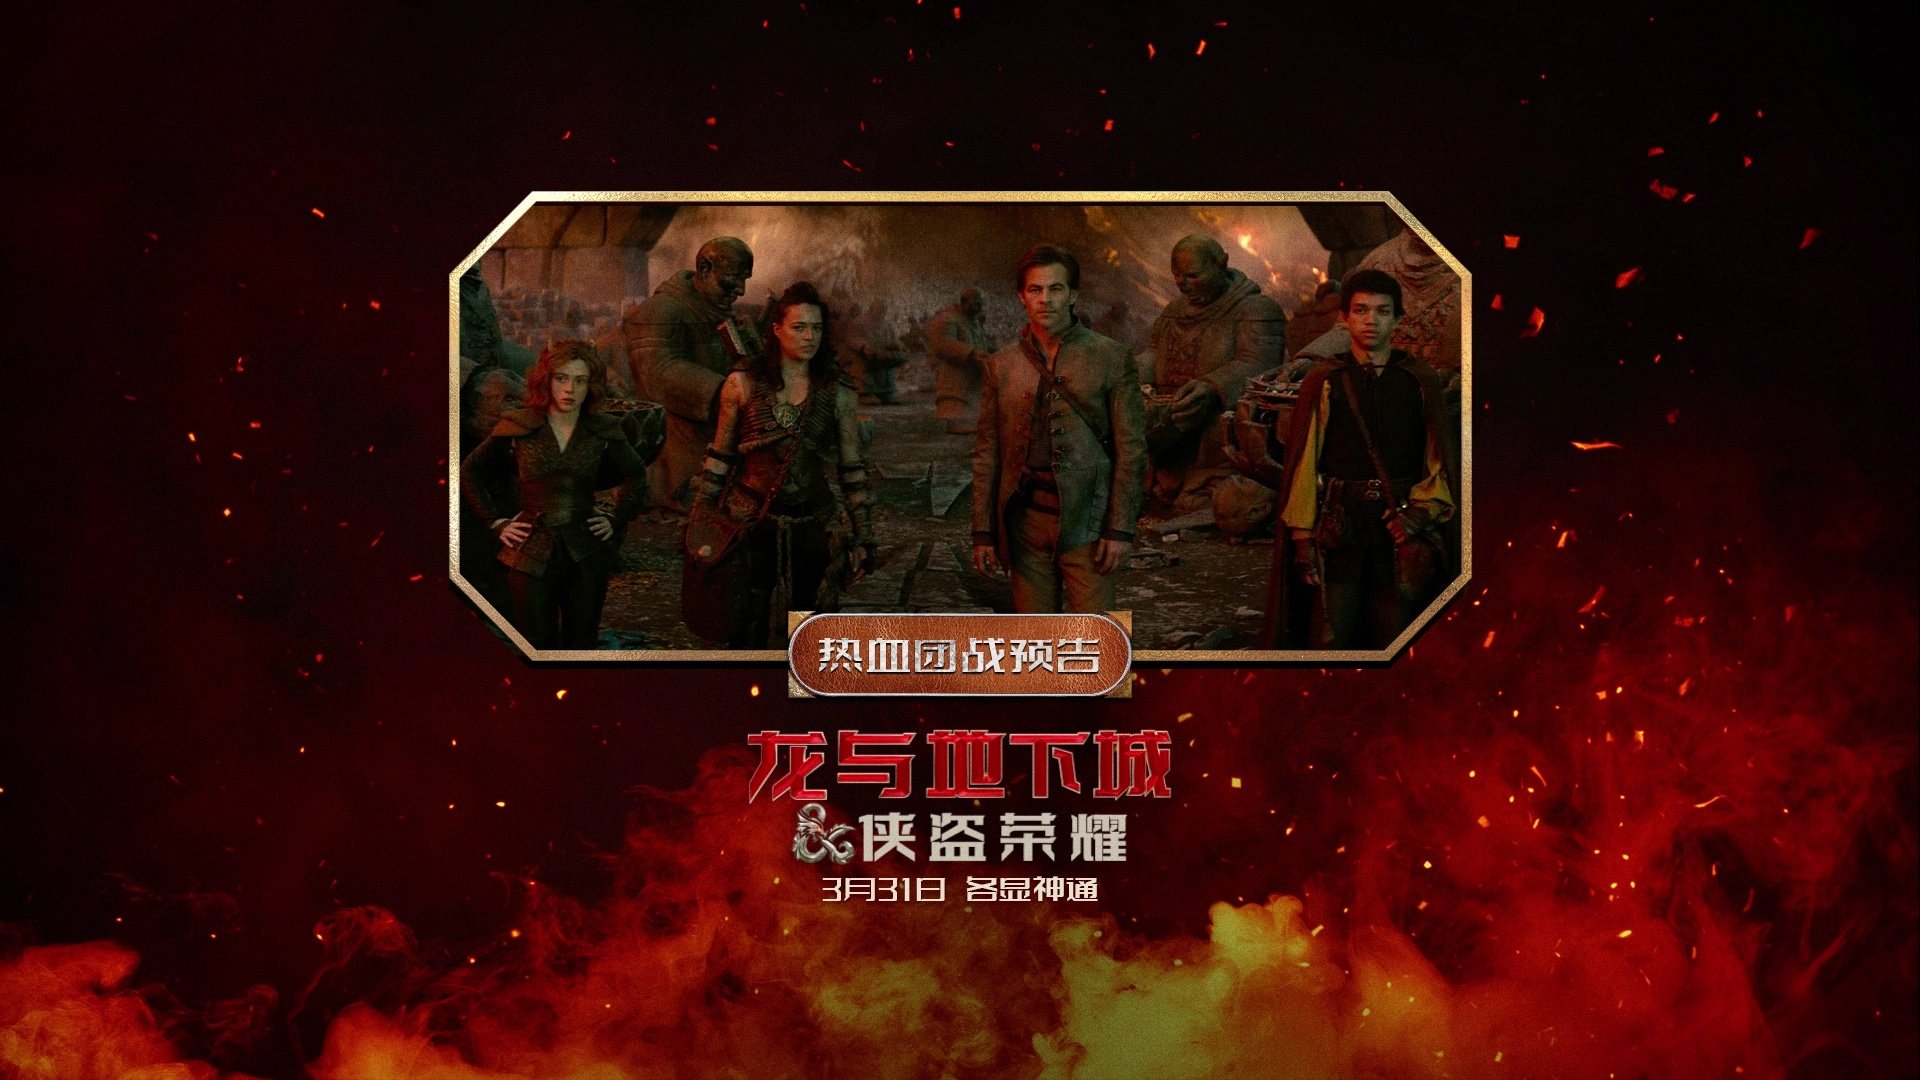 奇幻冒险电影《龙与地下城》发布热血团战预告